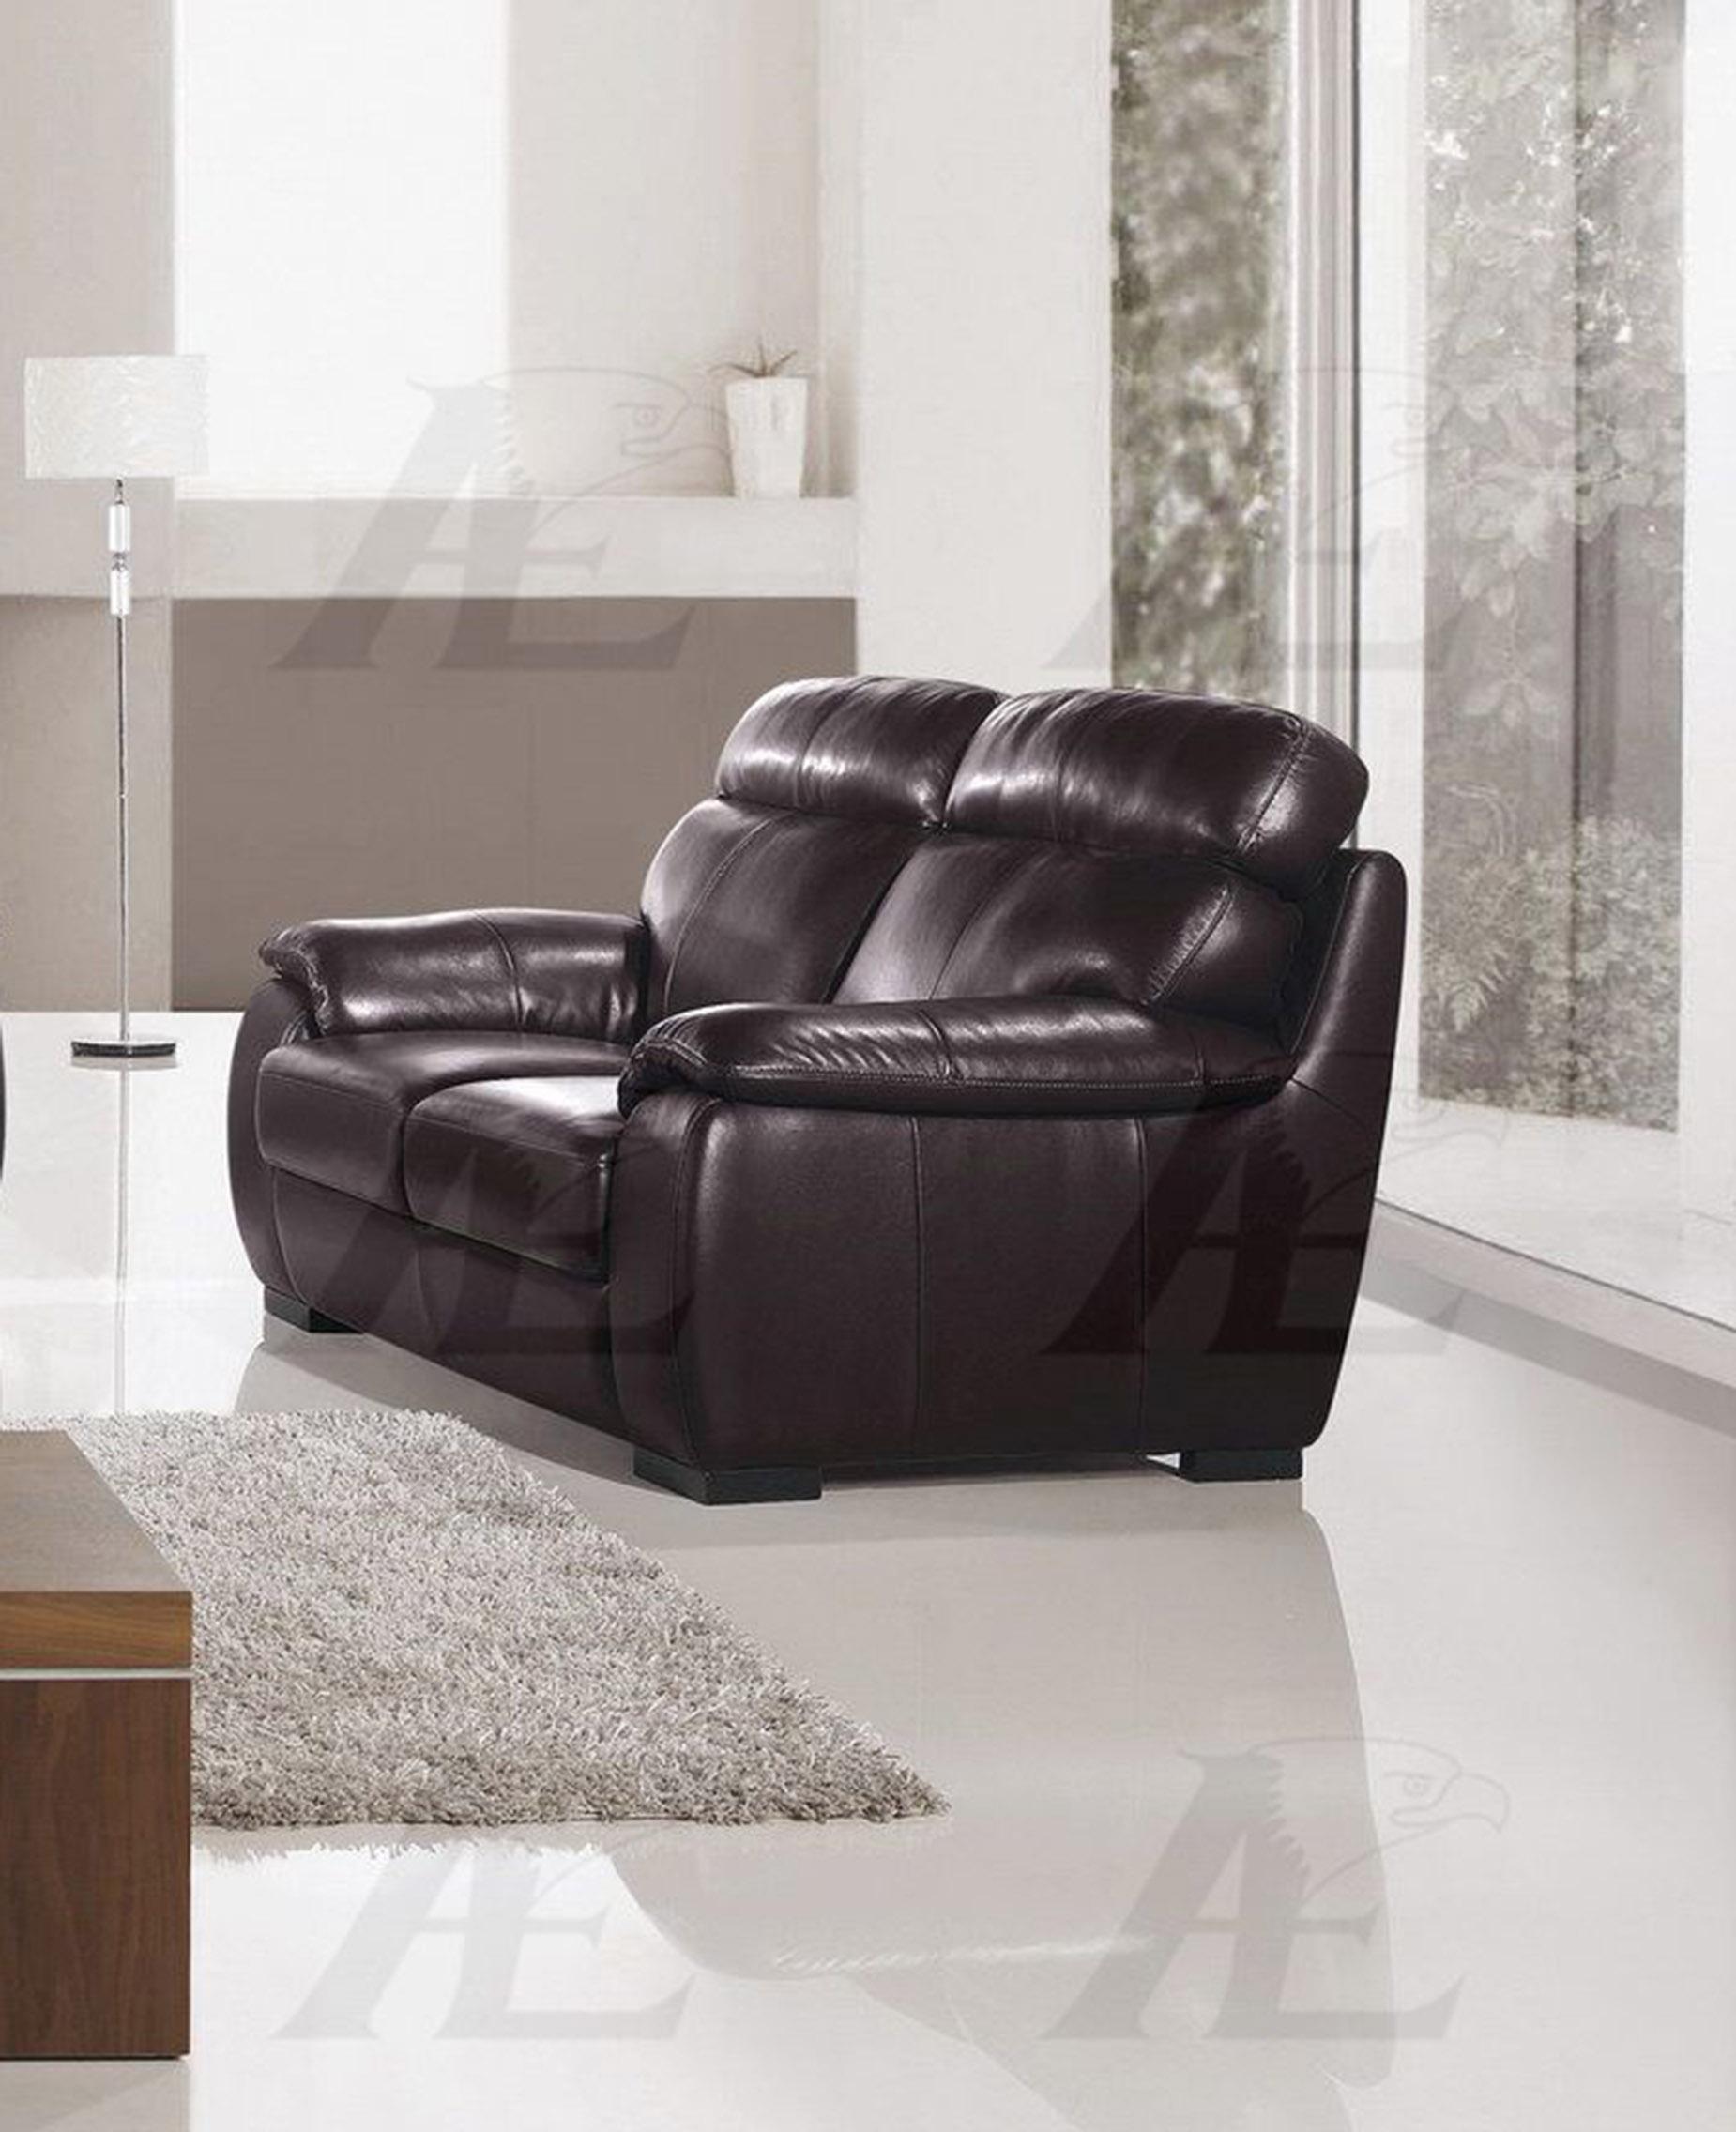 

    
American Eagle Furniture EK011-DB Sofa and Loveseat Set Dark Chocolate EK011-DB Set-2
